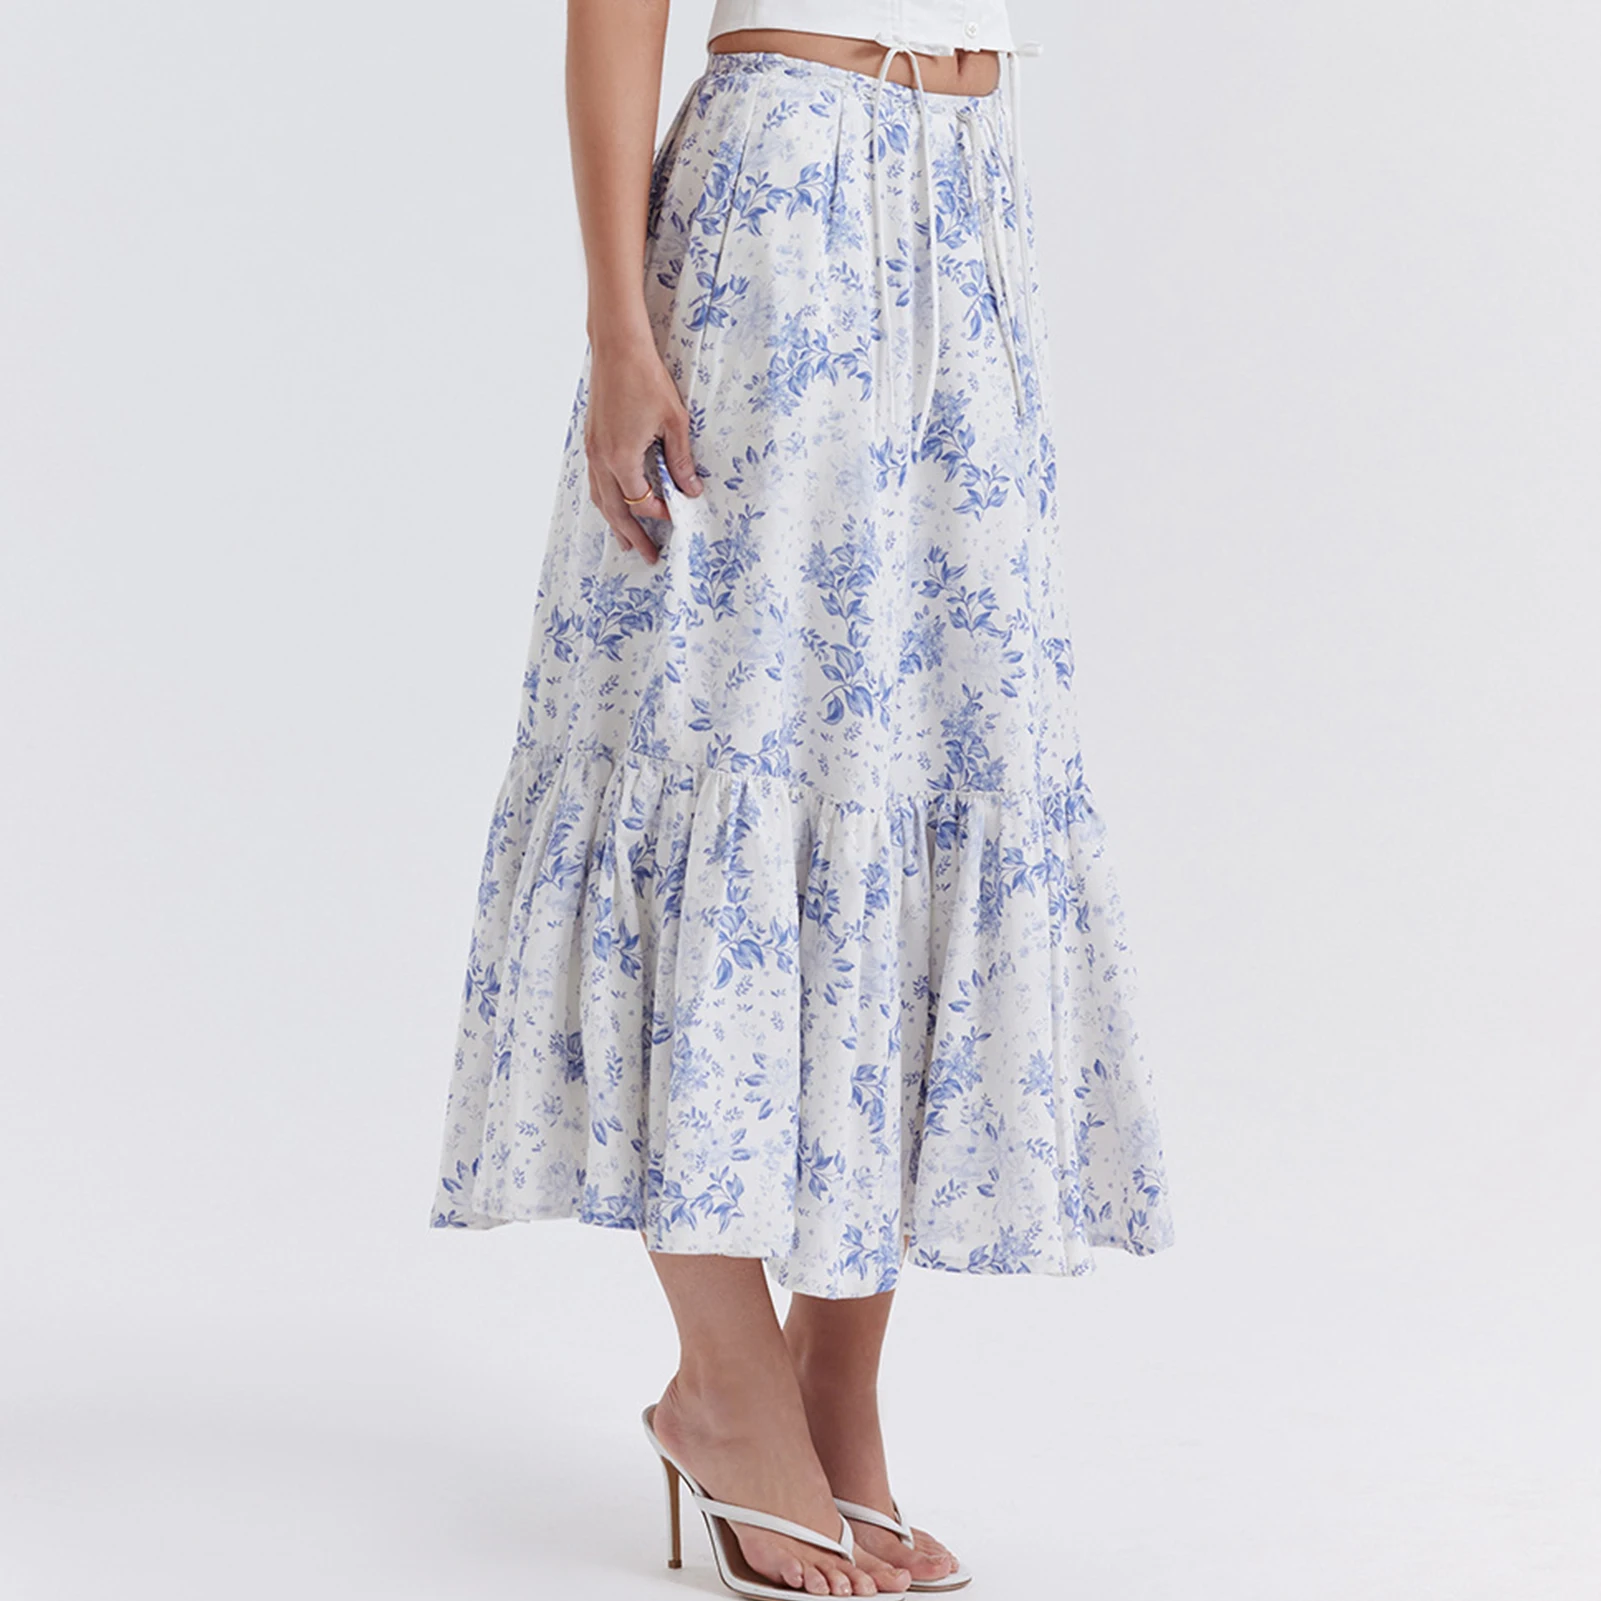 

Юбка-миди Женская плиссированная до середины икры, элегантная голубая юбка с цветочным принтом для отпуска, в стиле ретро, на лето